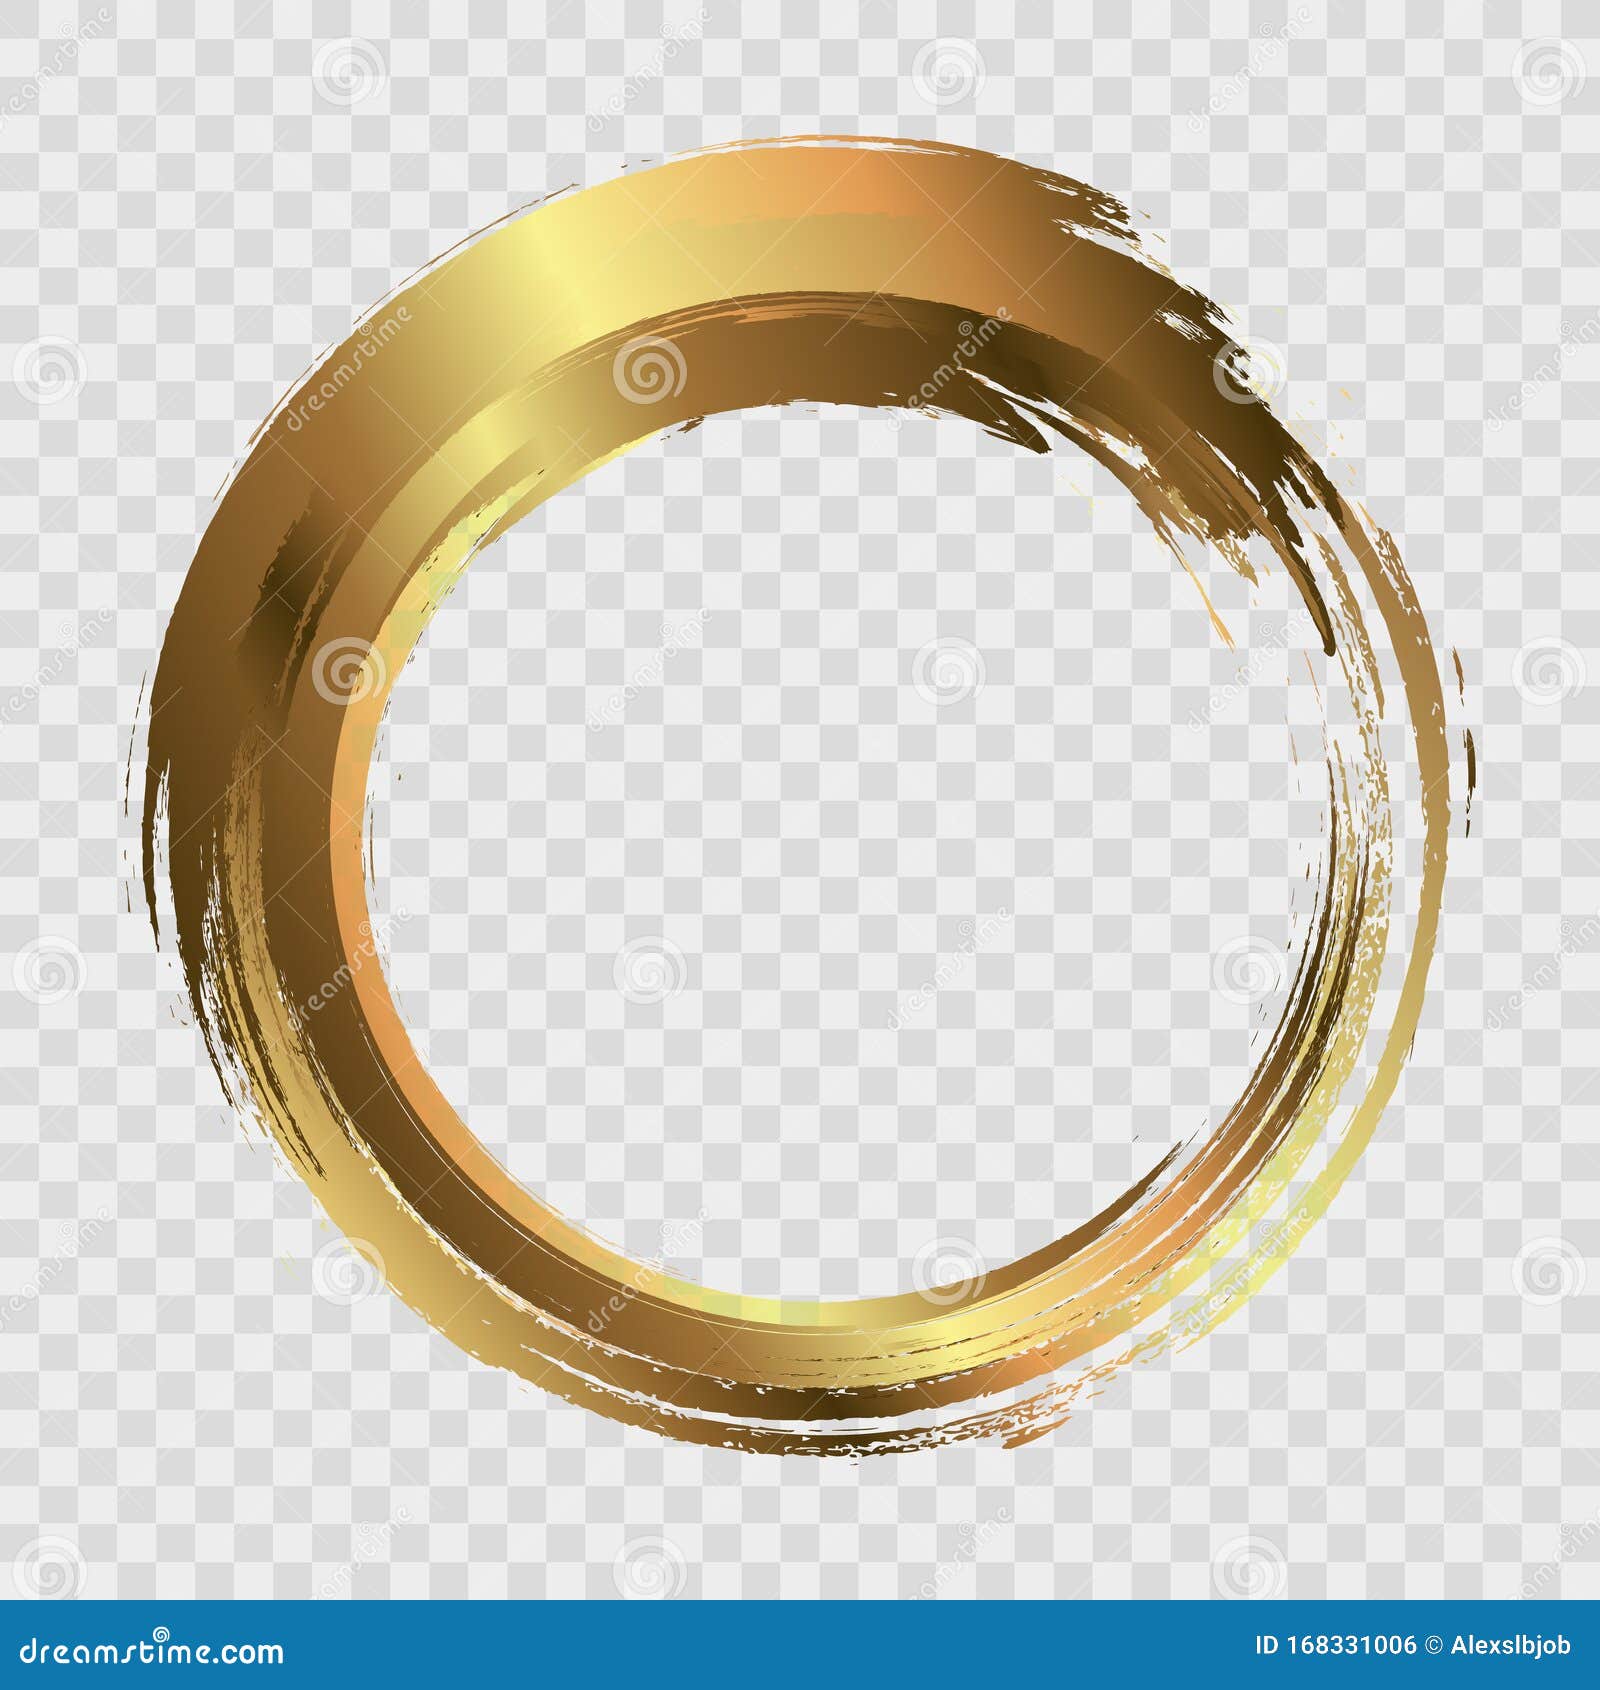 Circle Golden Frame Vector Design Images, Golden Circle Frame